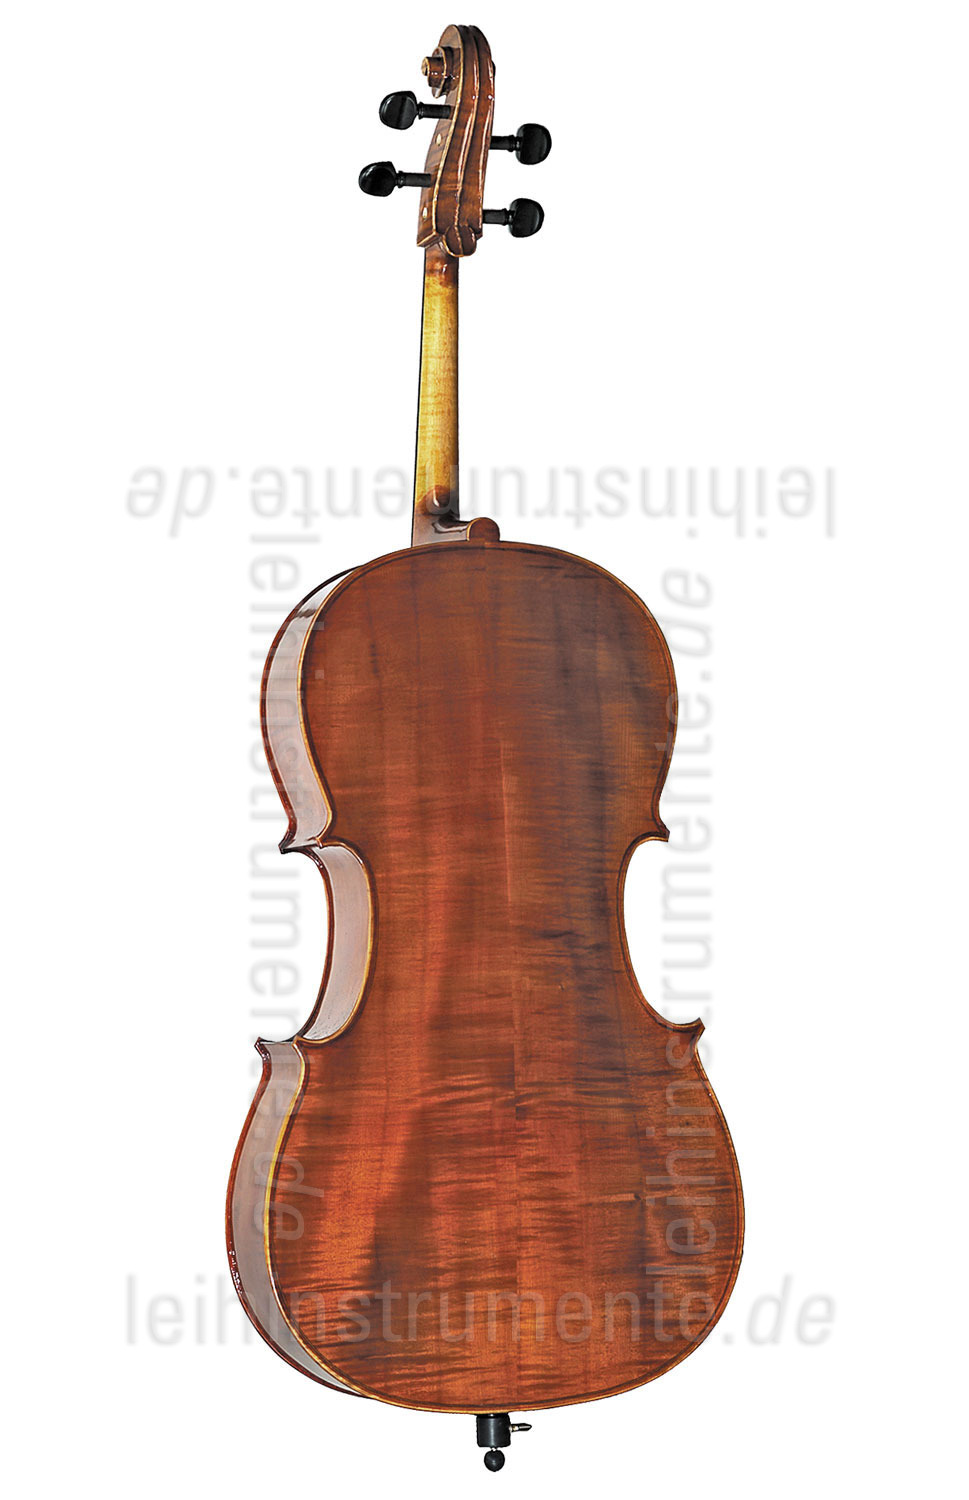 zur Artikelbeschreibung / Preis 1/8 Cello - GEWA ALLEGRO - Komplettset - vollmassiv - (gebraucht)